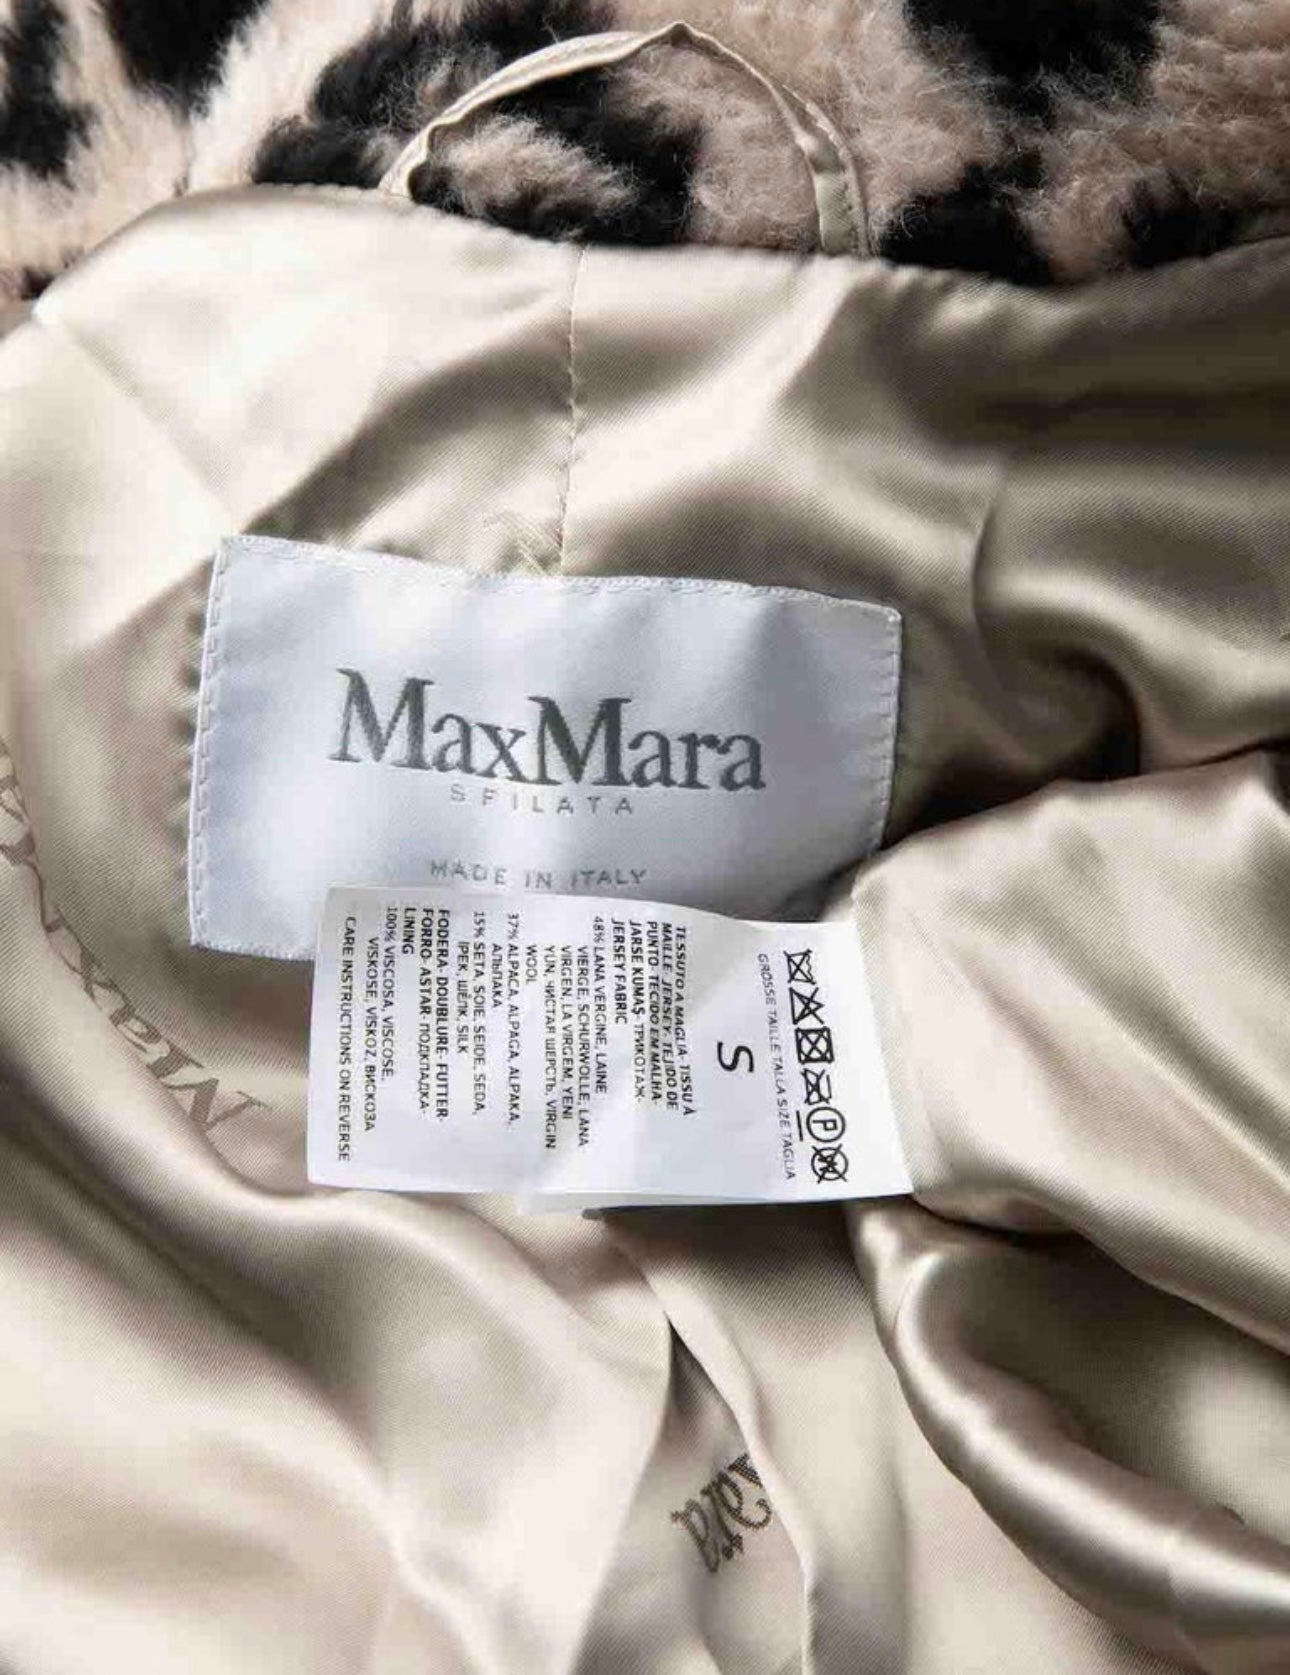 Max Mara -Teddy Wool Leopard Print Coat Size S